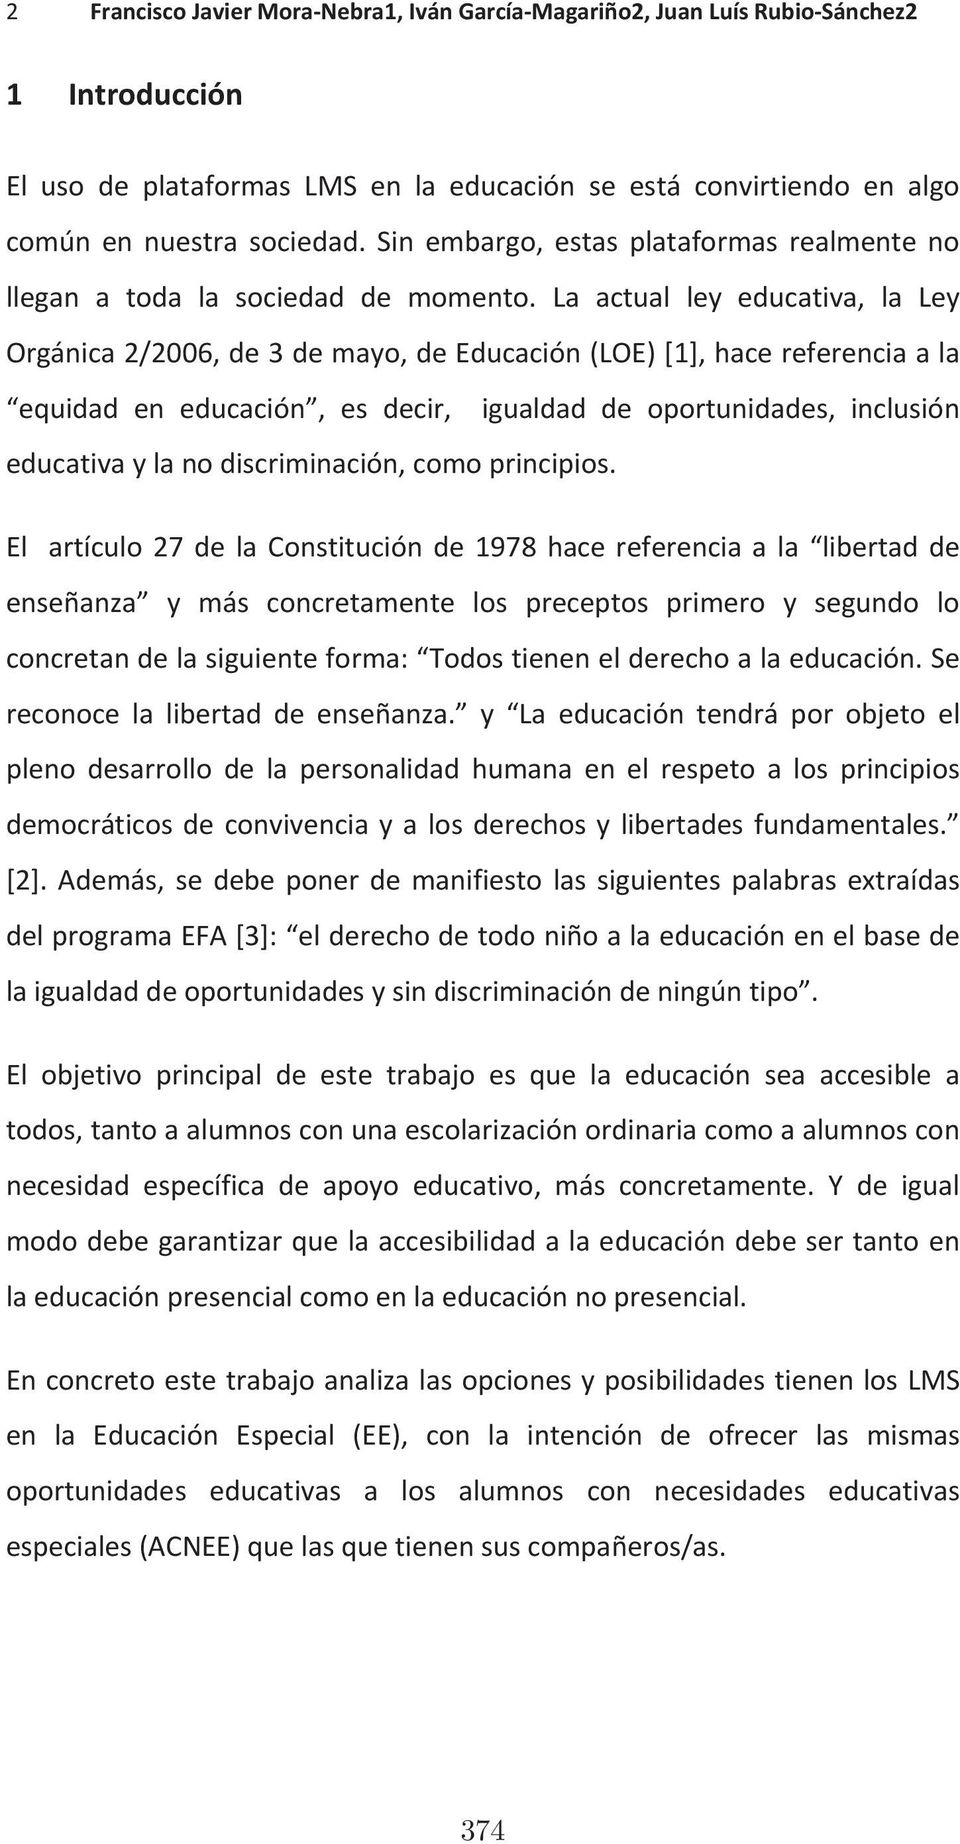 La actual ley educativa, la Ley Orgánica2/2006,de3demayo,deEducación(LOE)[1],hacereferenciaala equidad en educación, es decir, igualdad de oportunidades, inclusión